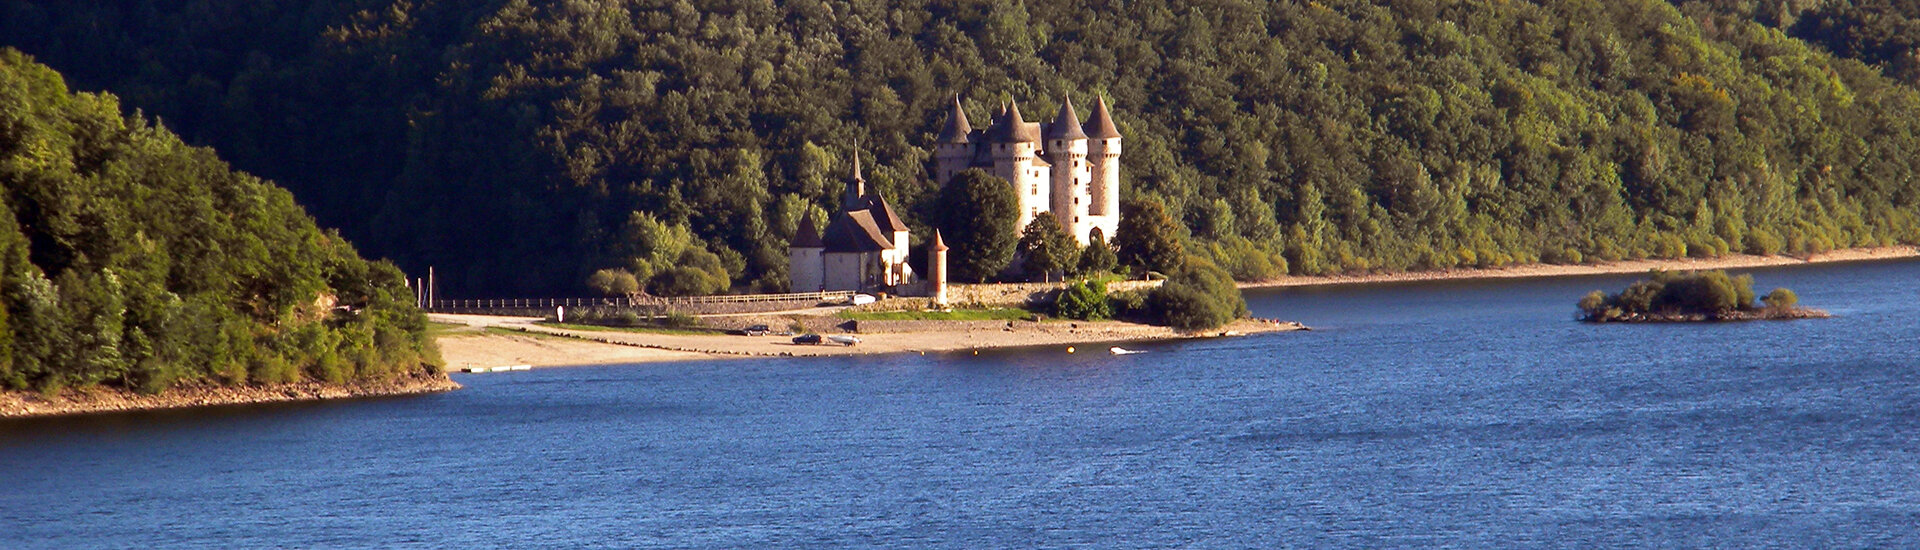 Le Château de Val, près de Beaulieu